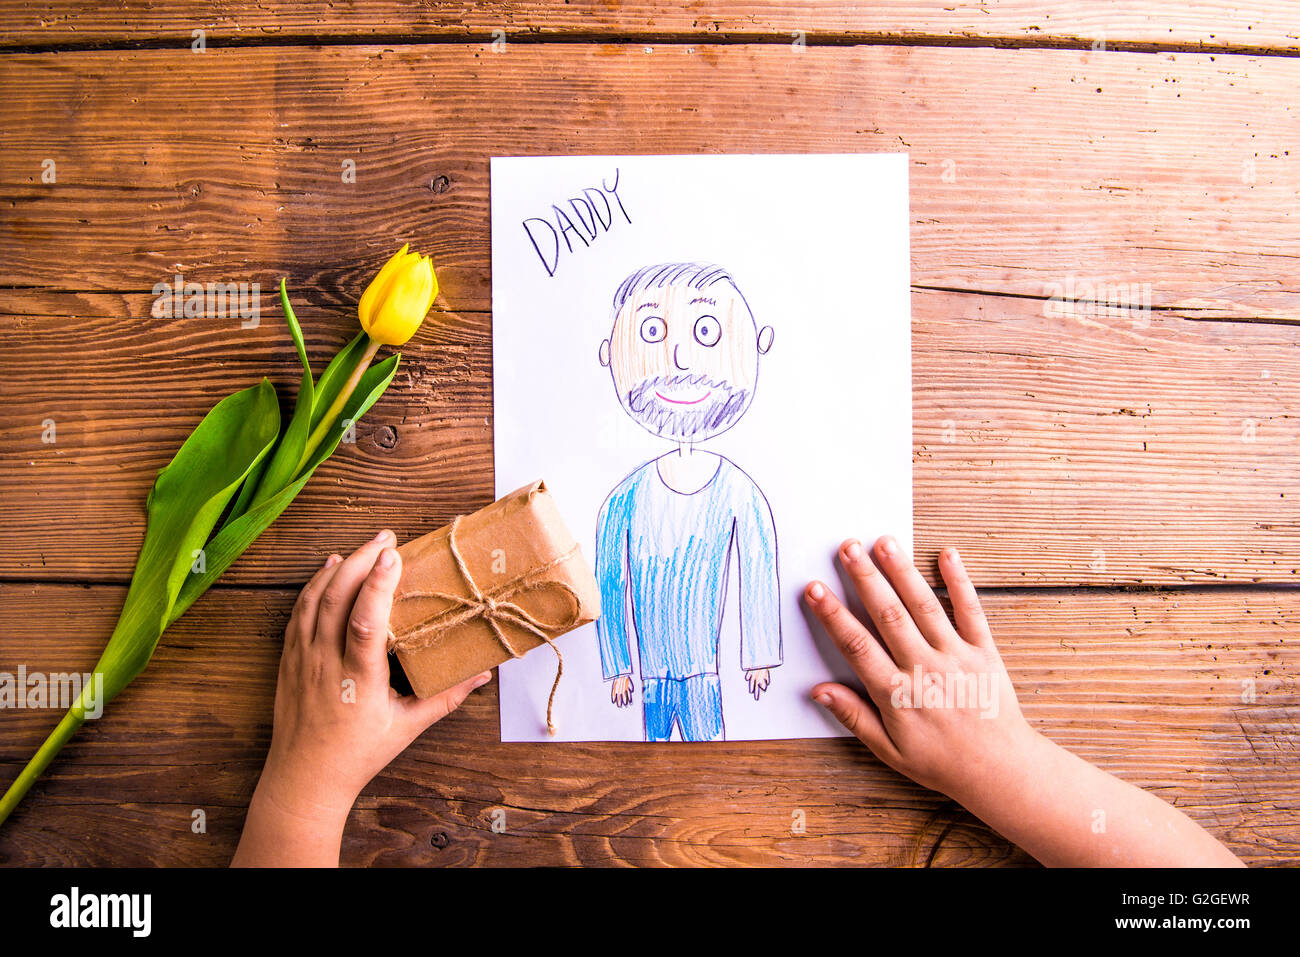 Composition des pères. Mains d'enfant tenant un dessin méconnaissable de son père et de son petit cadeau. Tulipe jaune. Sho Studio Banque D'Images